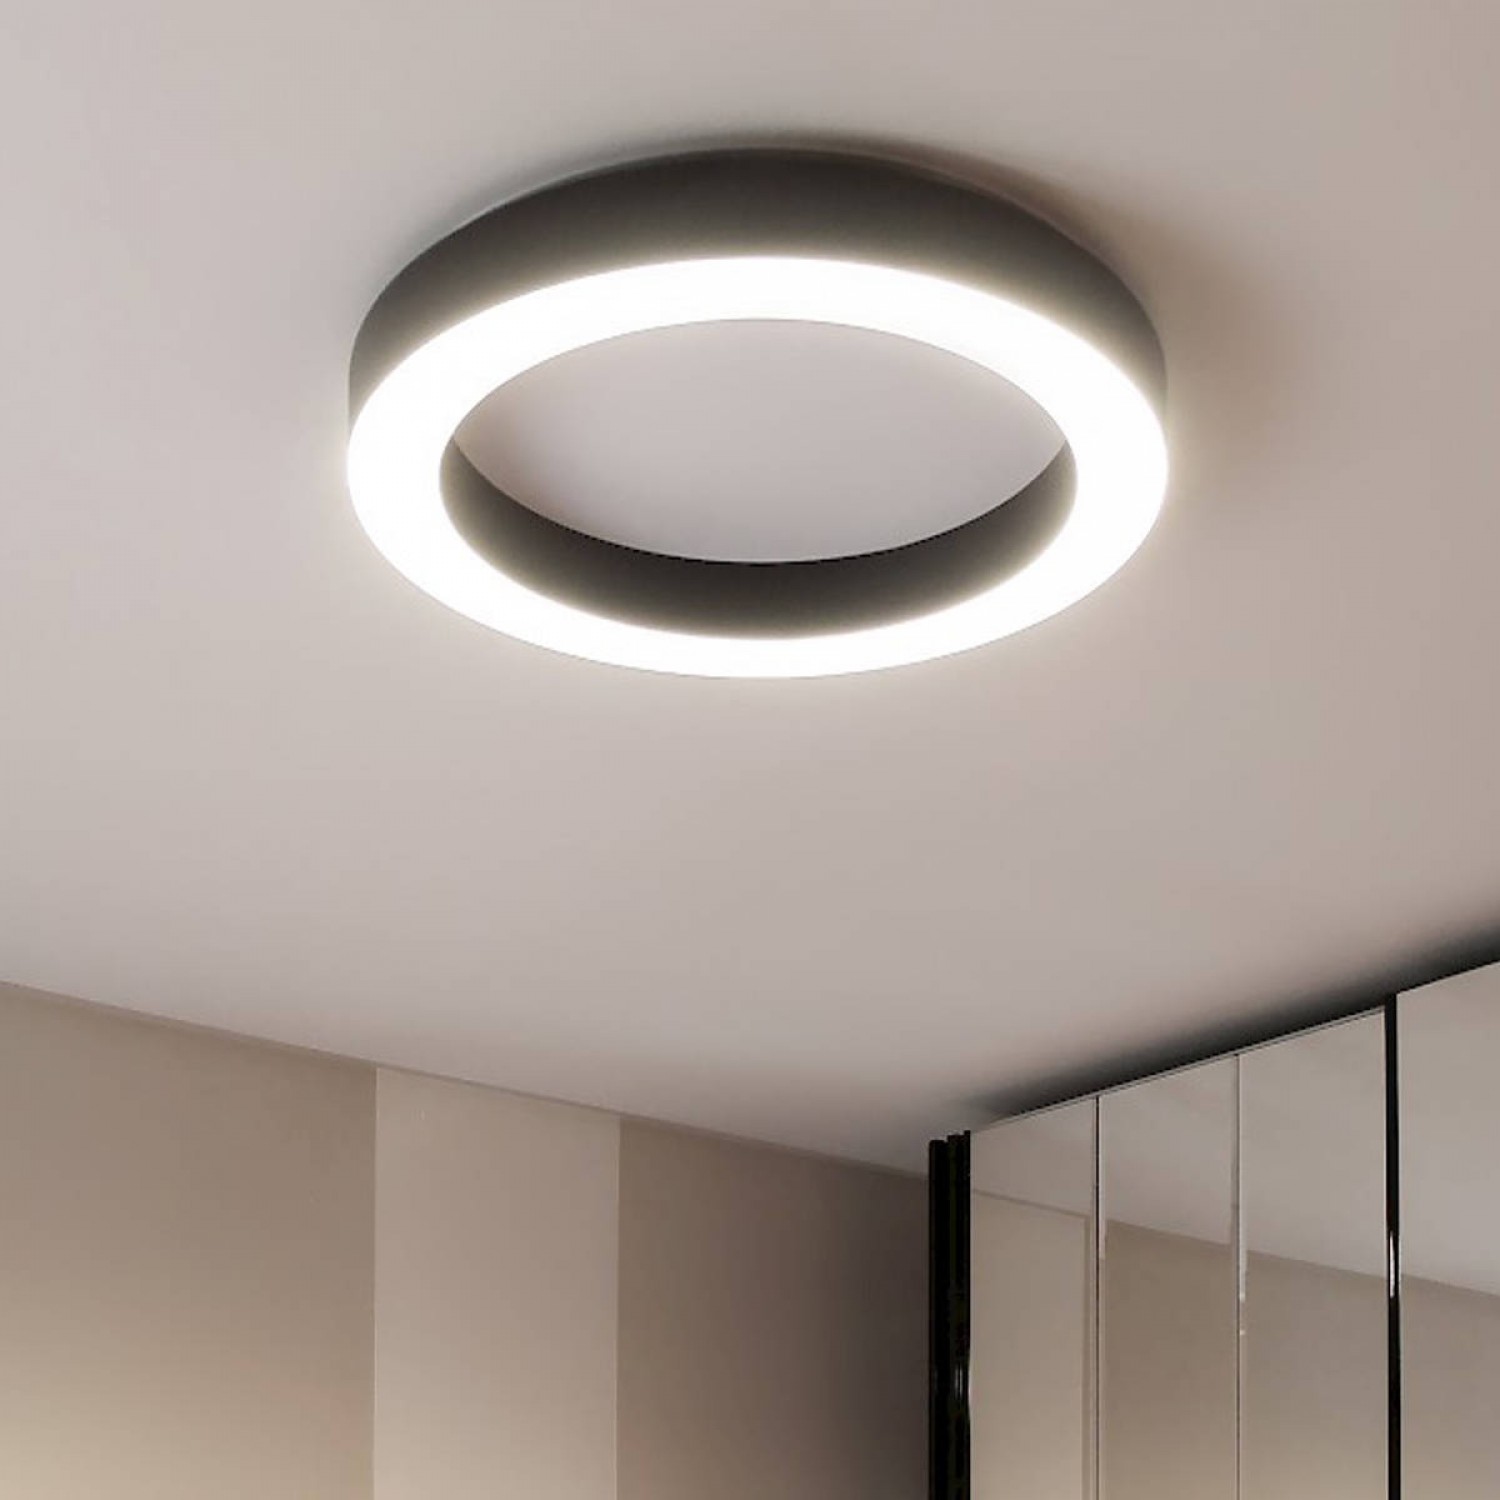 Plafoniera minimale con struttura in alluminio, dalla forma circolare a  forma di anello con colore bianco con luce a led ( 50W ) integrata